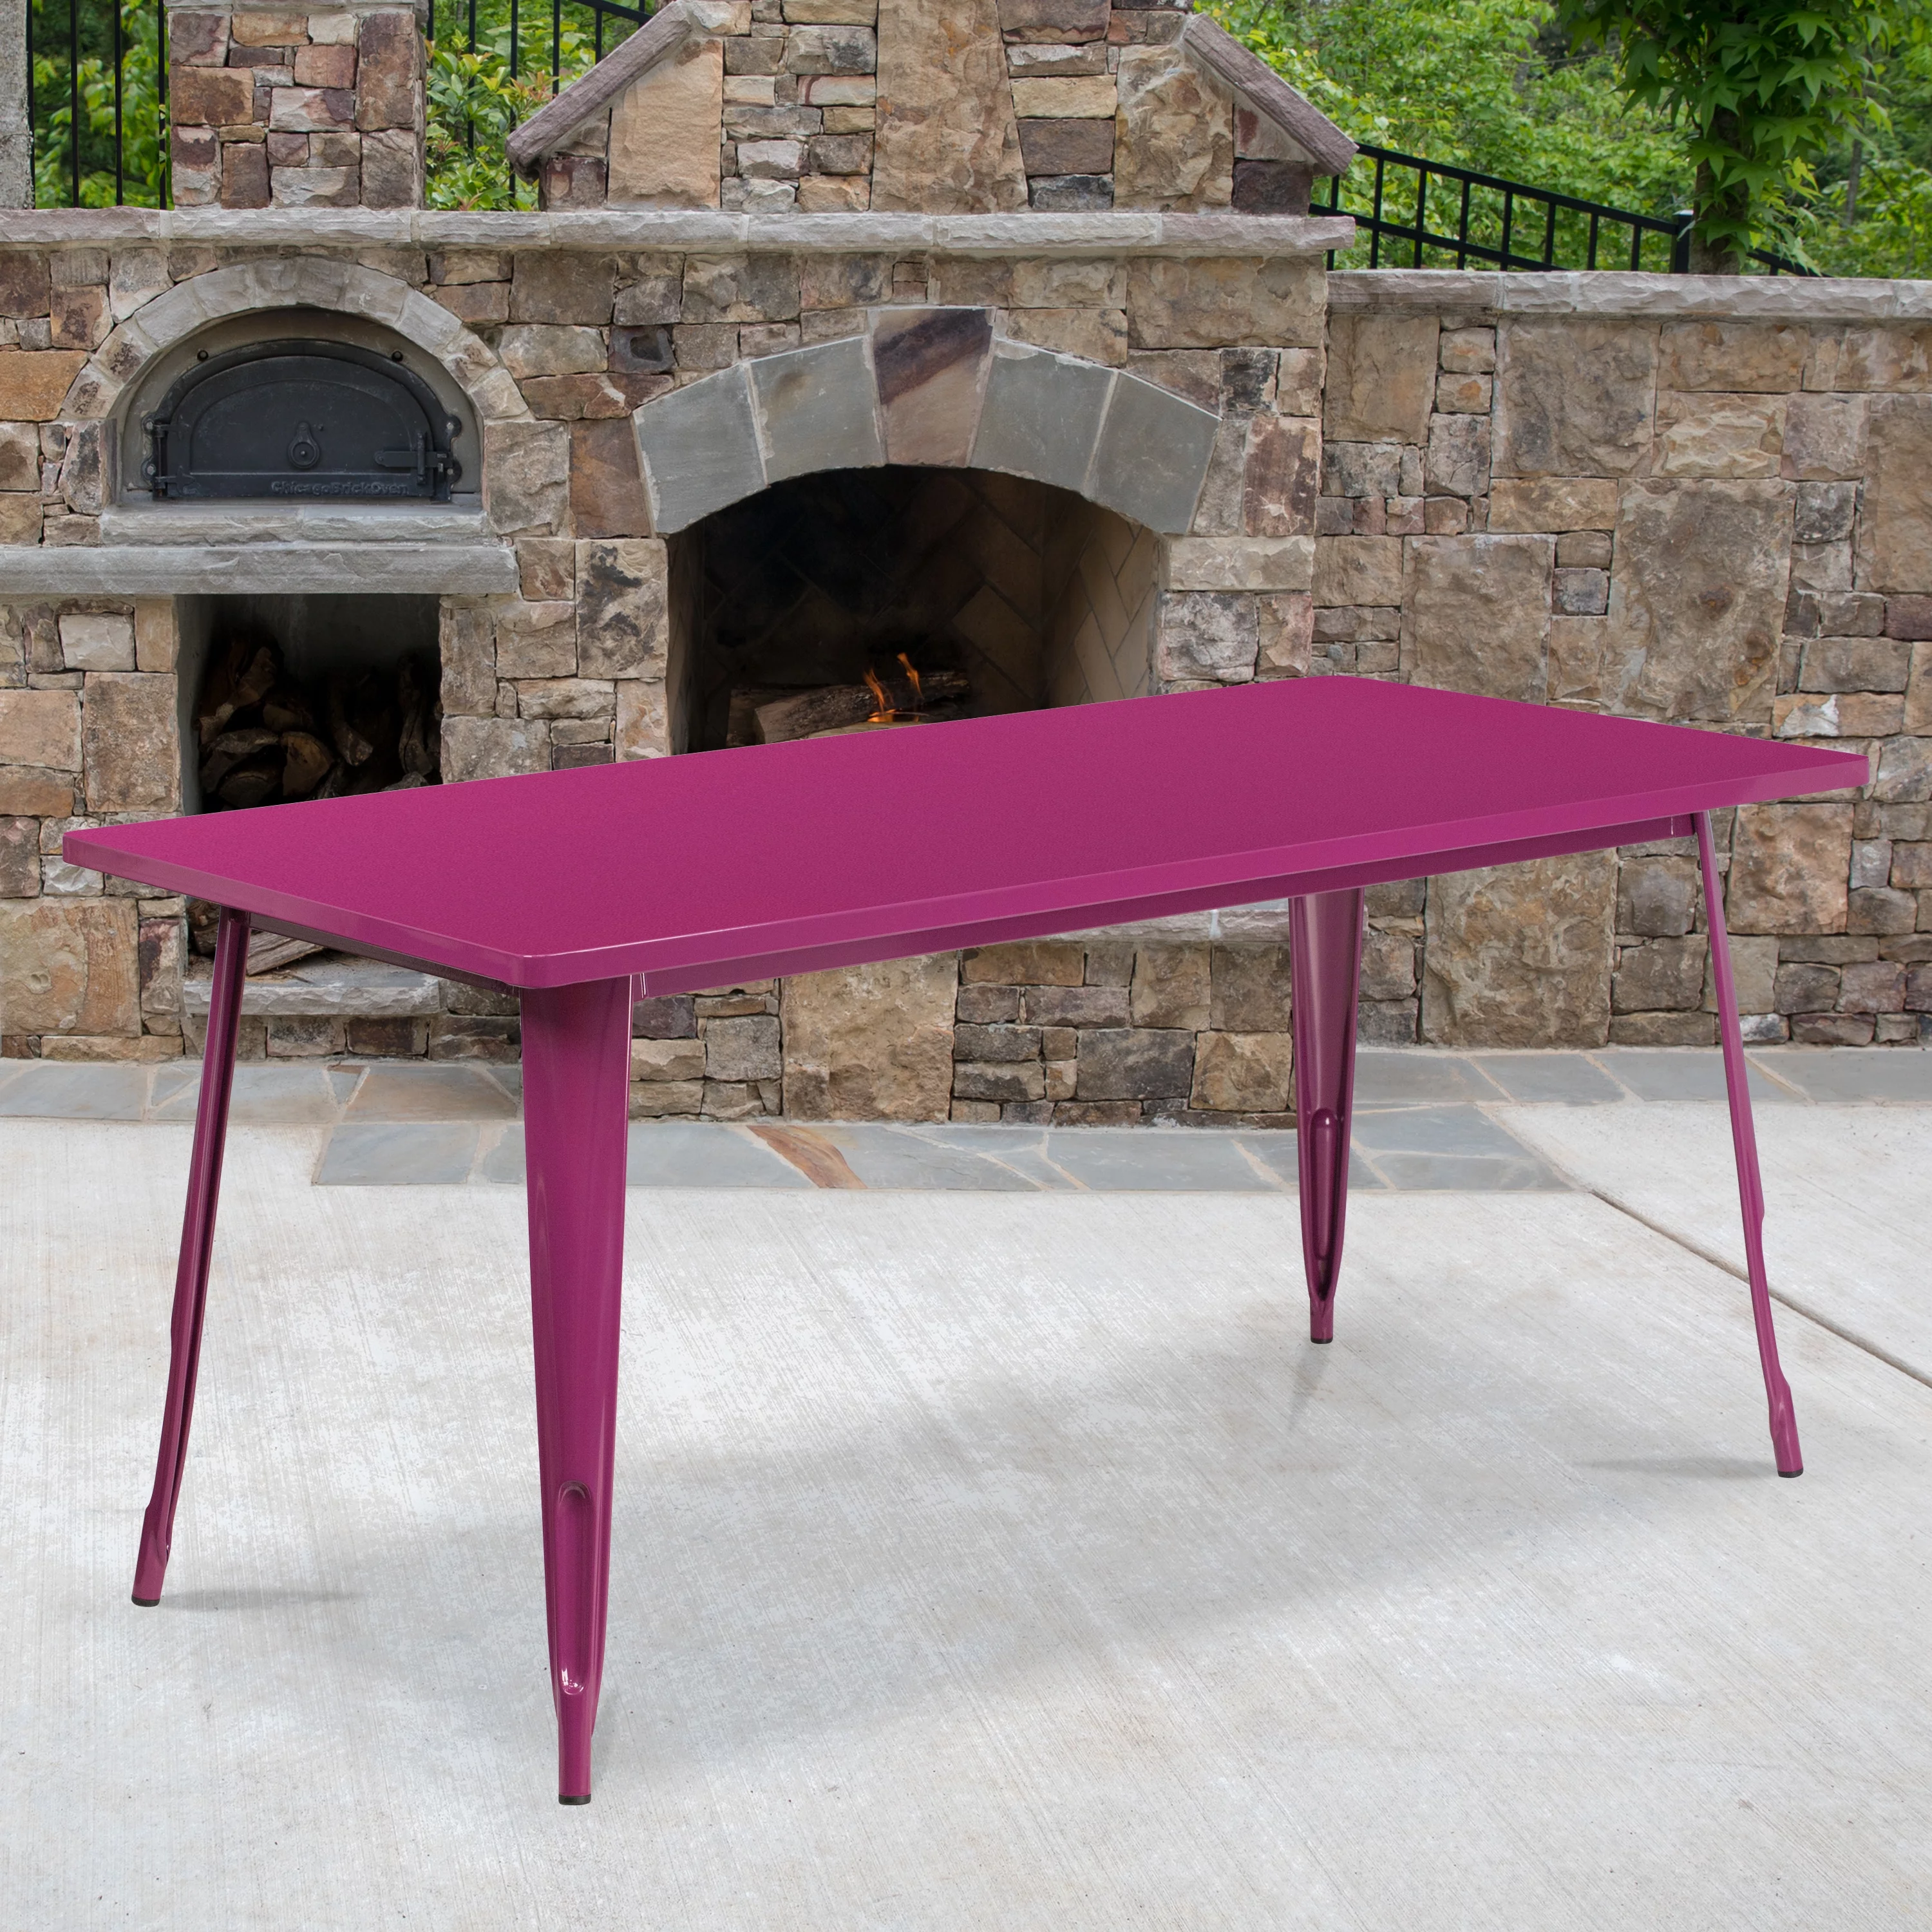 Flash Furniture Commercial Grade 31.5" x 63" Rectangular Purple Metal Indoor-Outdoor Table